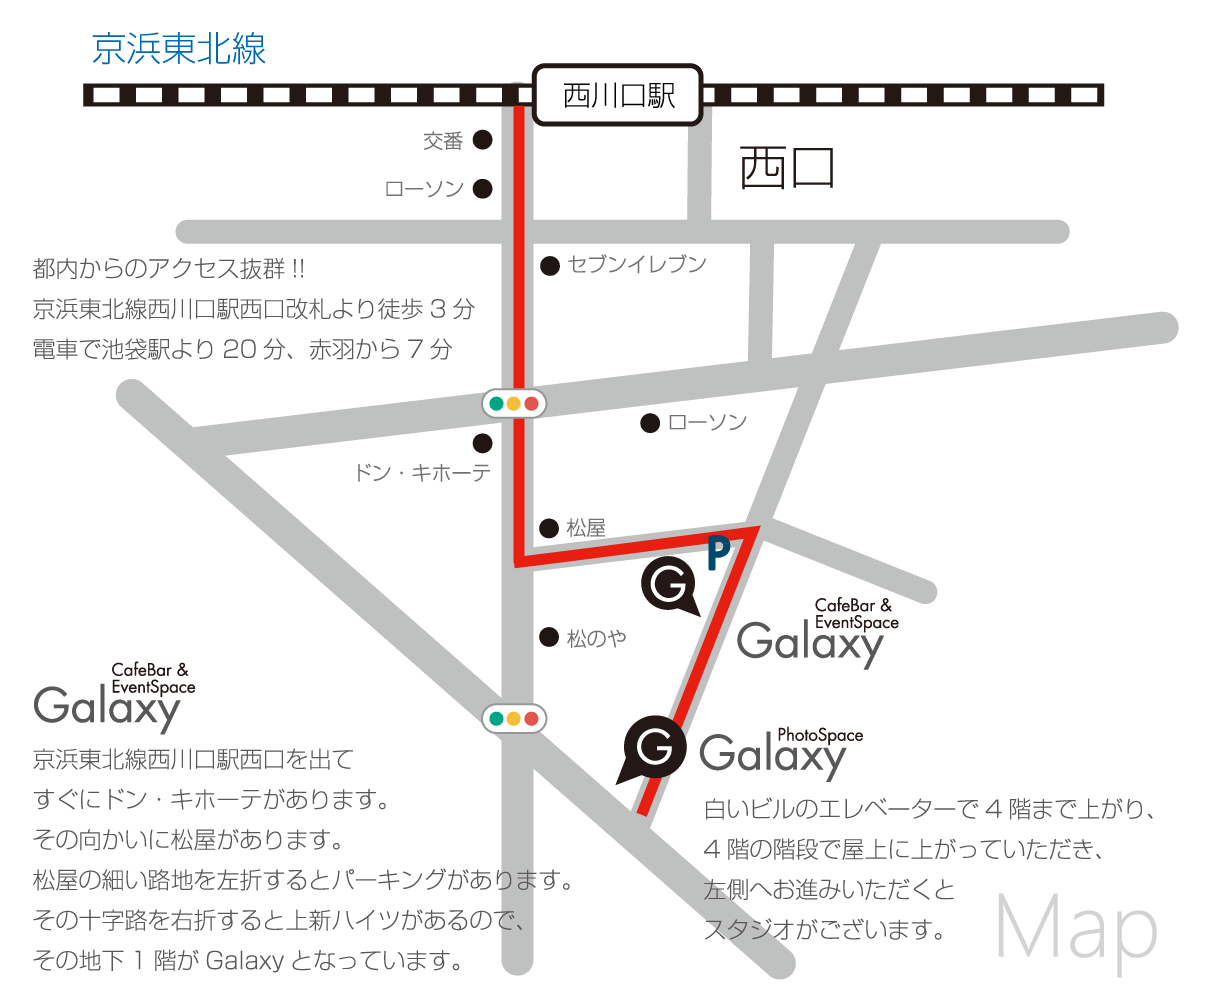 【地図】西川口 イベント会場・ライブハウス・カフェバー Galaxy